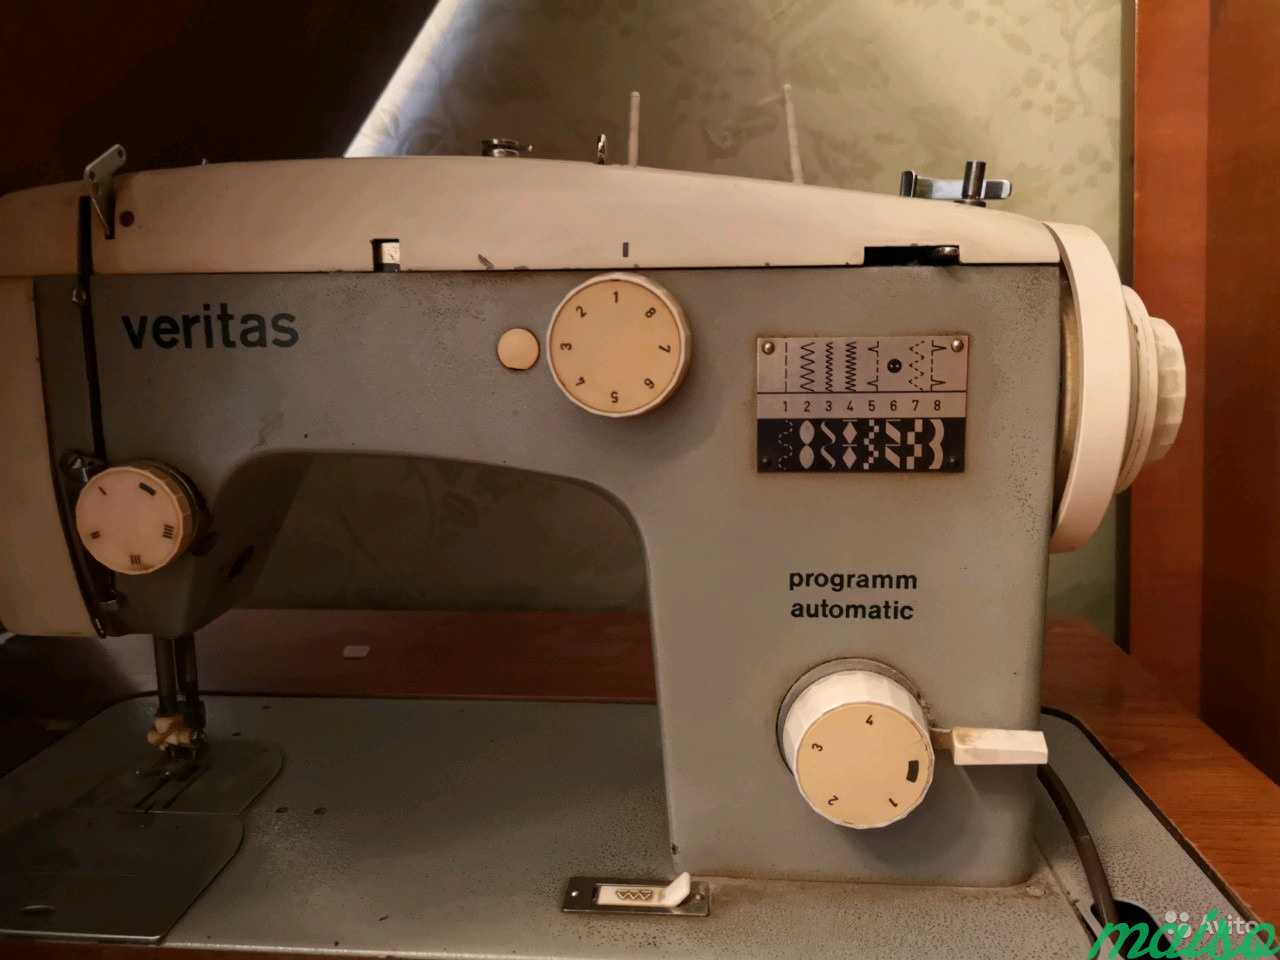 Авито швейные машинки веритас. Швейная машинка Веритас. Промышленная швейная машинка Веритас со столом il-5550. Швейная машинка veritas программ автоматика. Veritas Programm Automatic Швейные машины Старая.